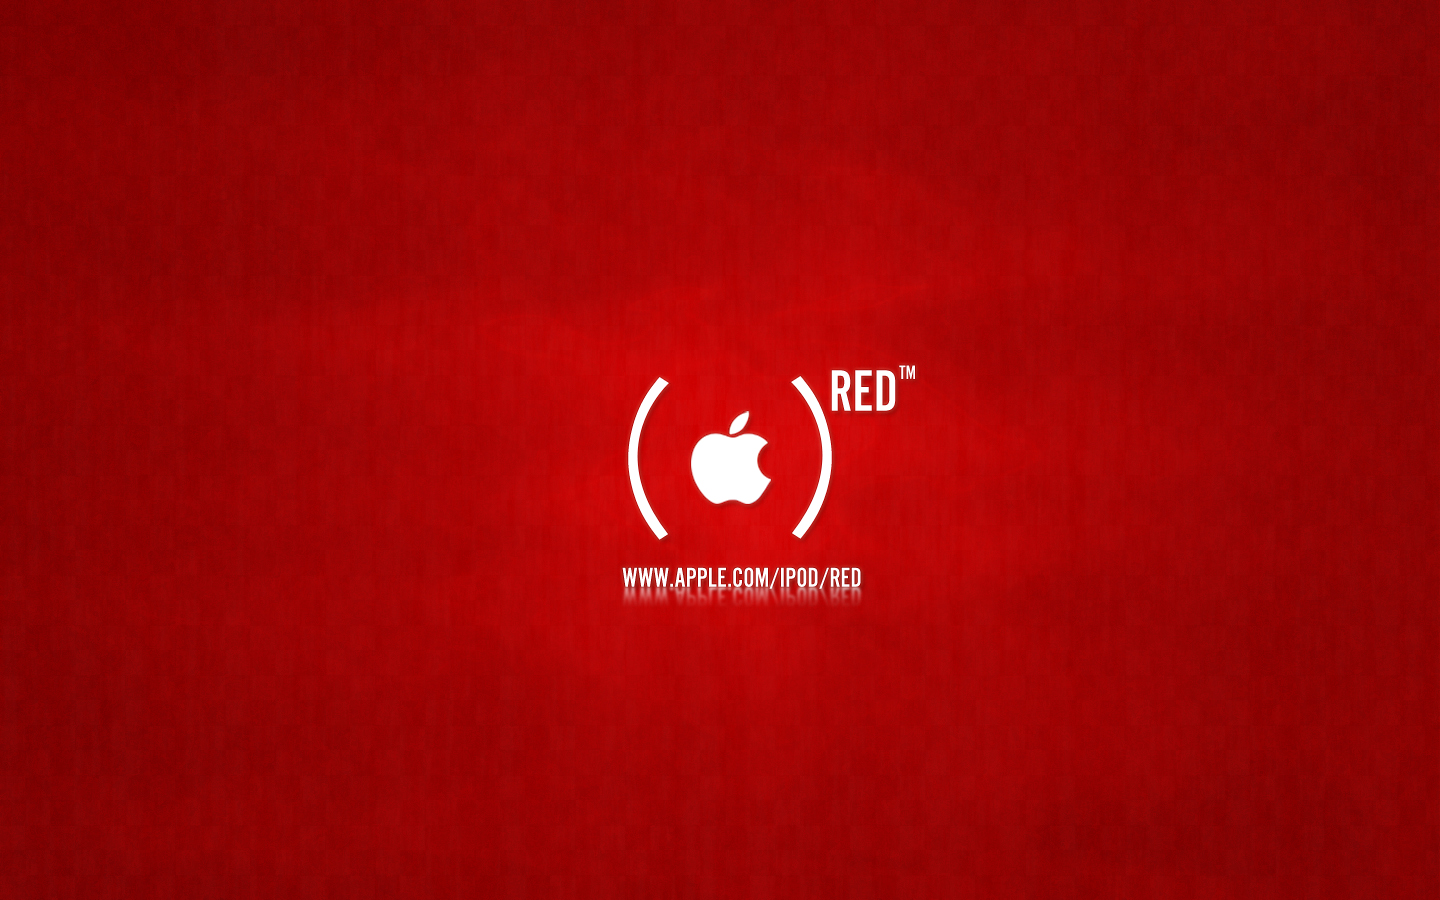 75+] Red Apple Wallpaper - WallpaperSafari